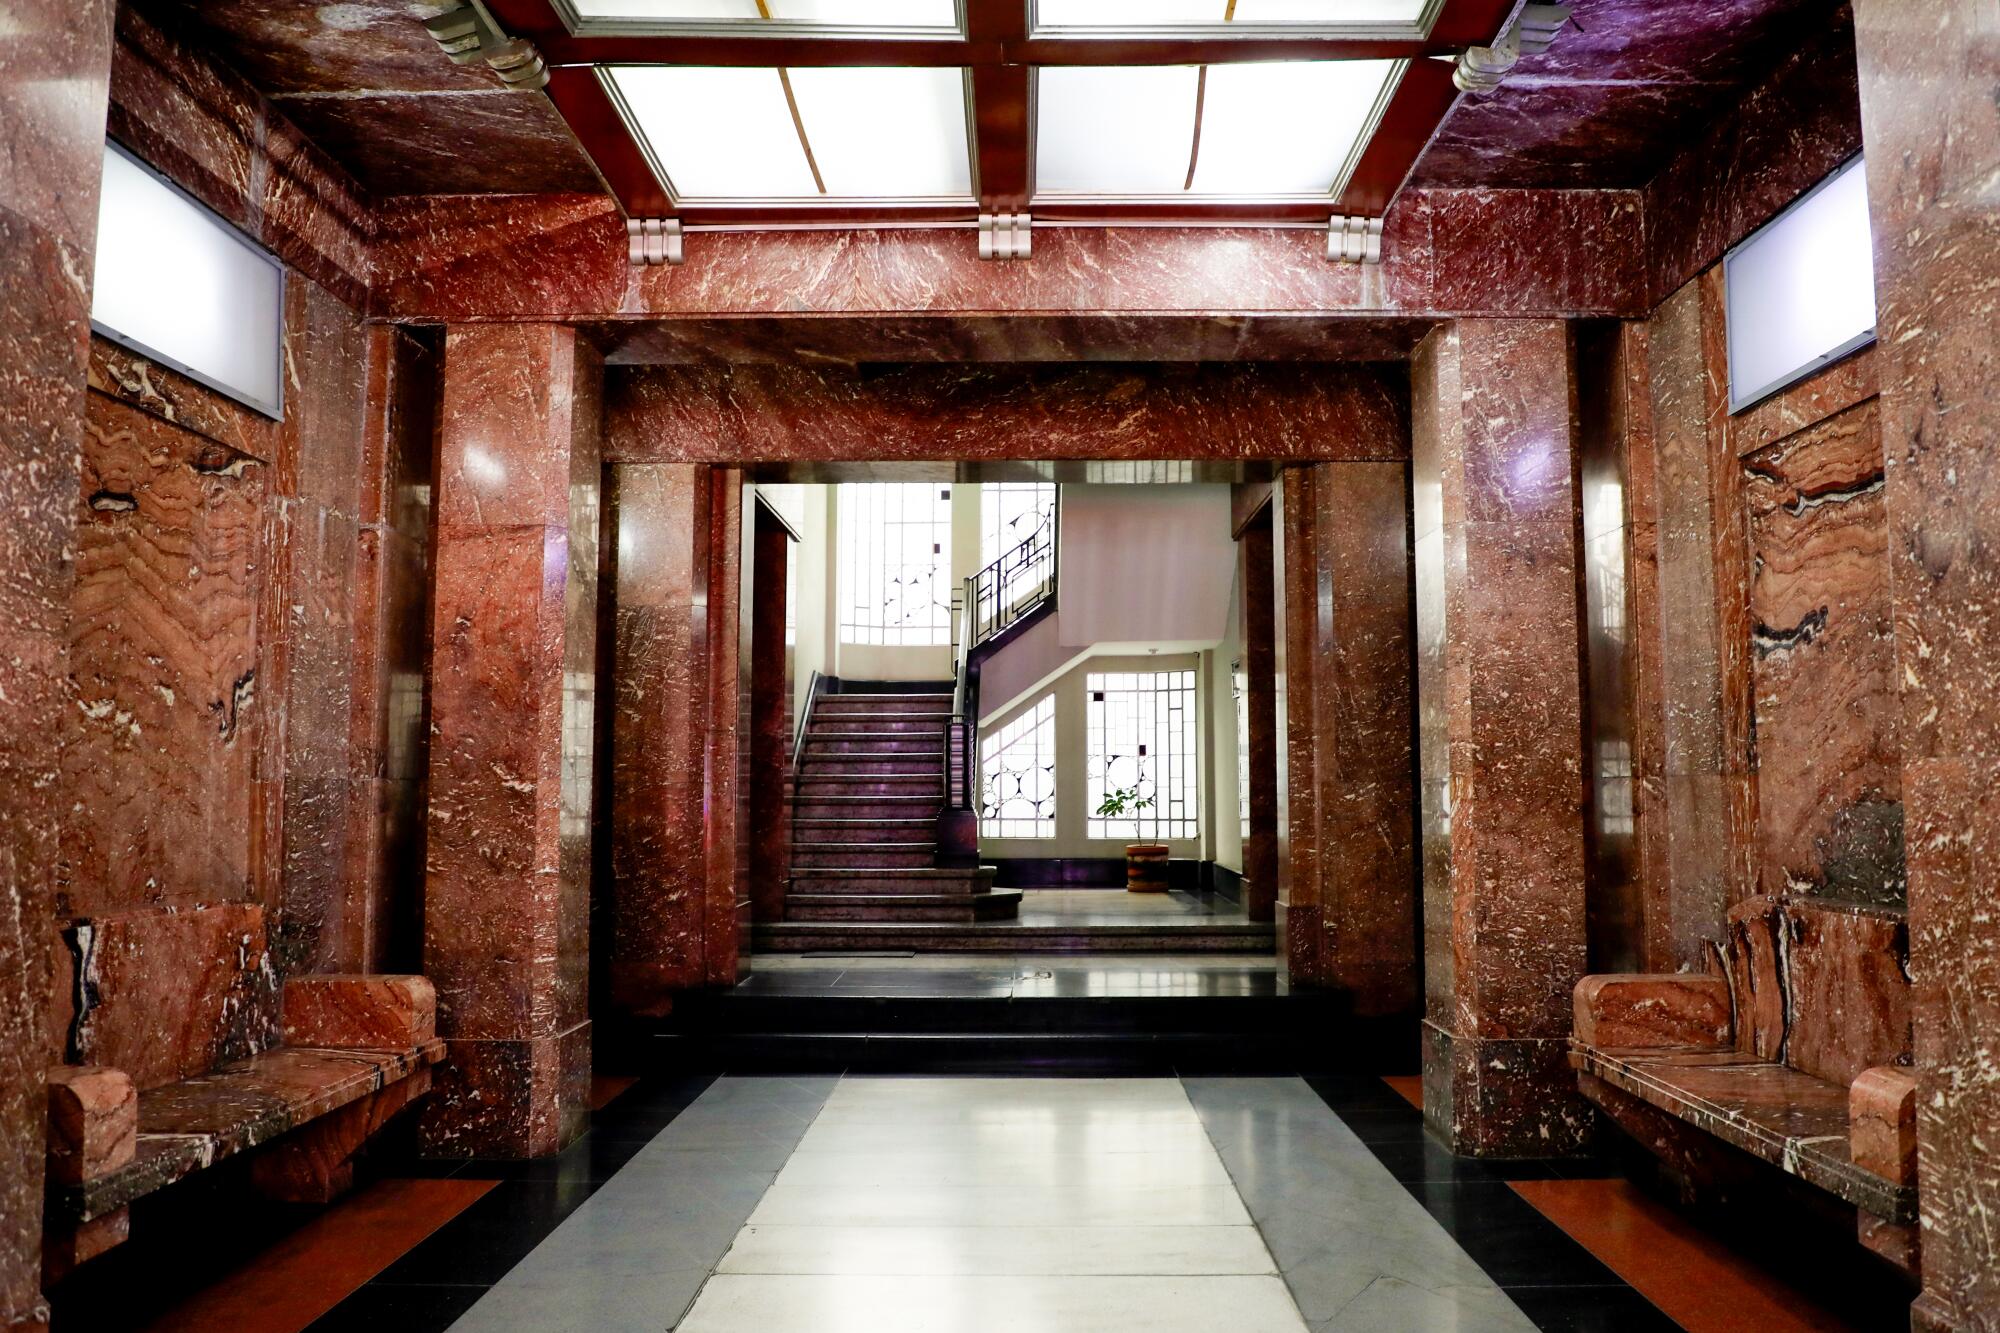 The lobby of an Art Deco building.